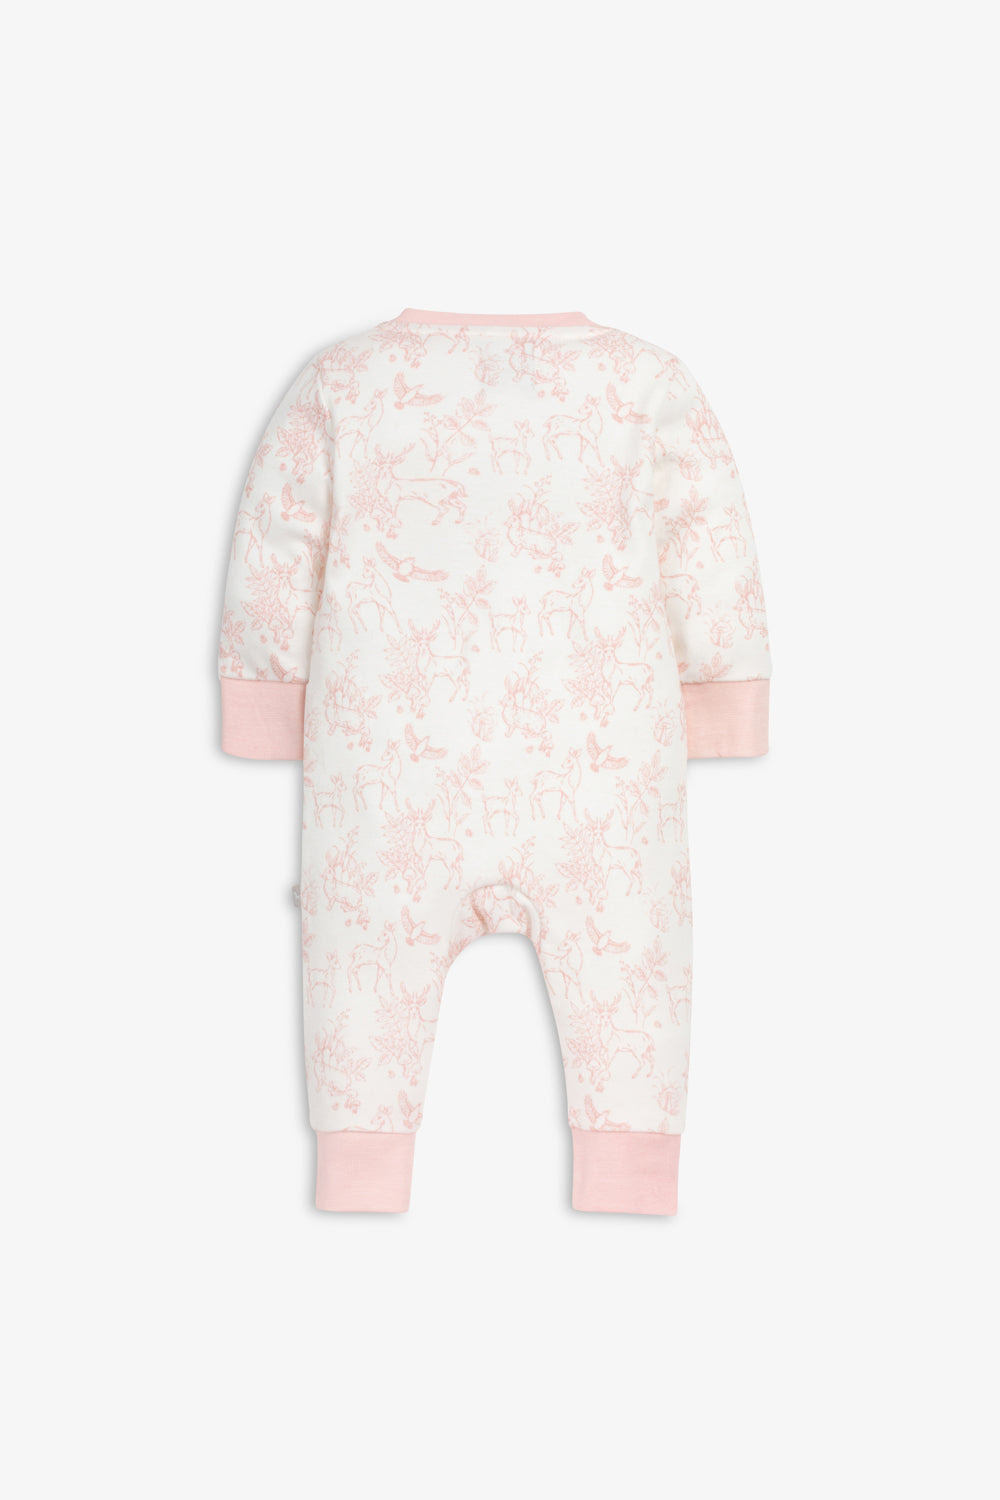 Sleepsuit/Onesie, rose pink woodland print